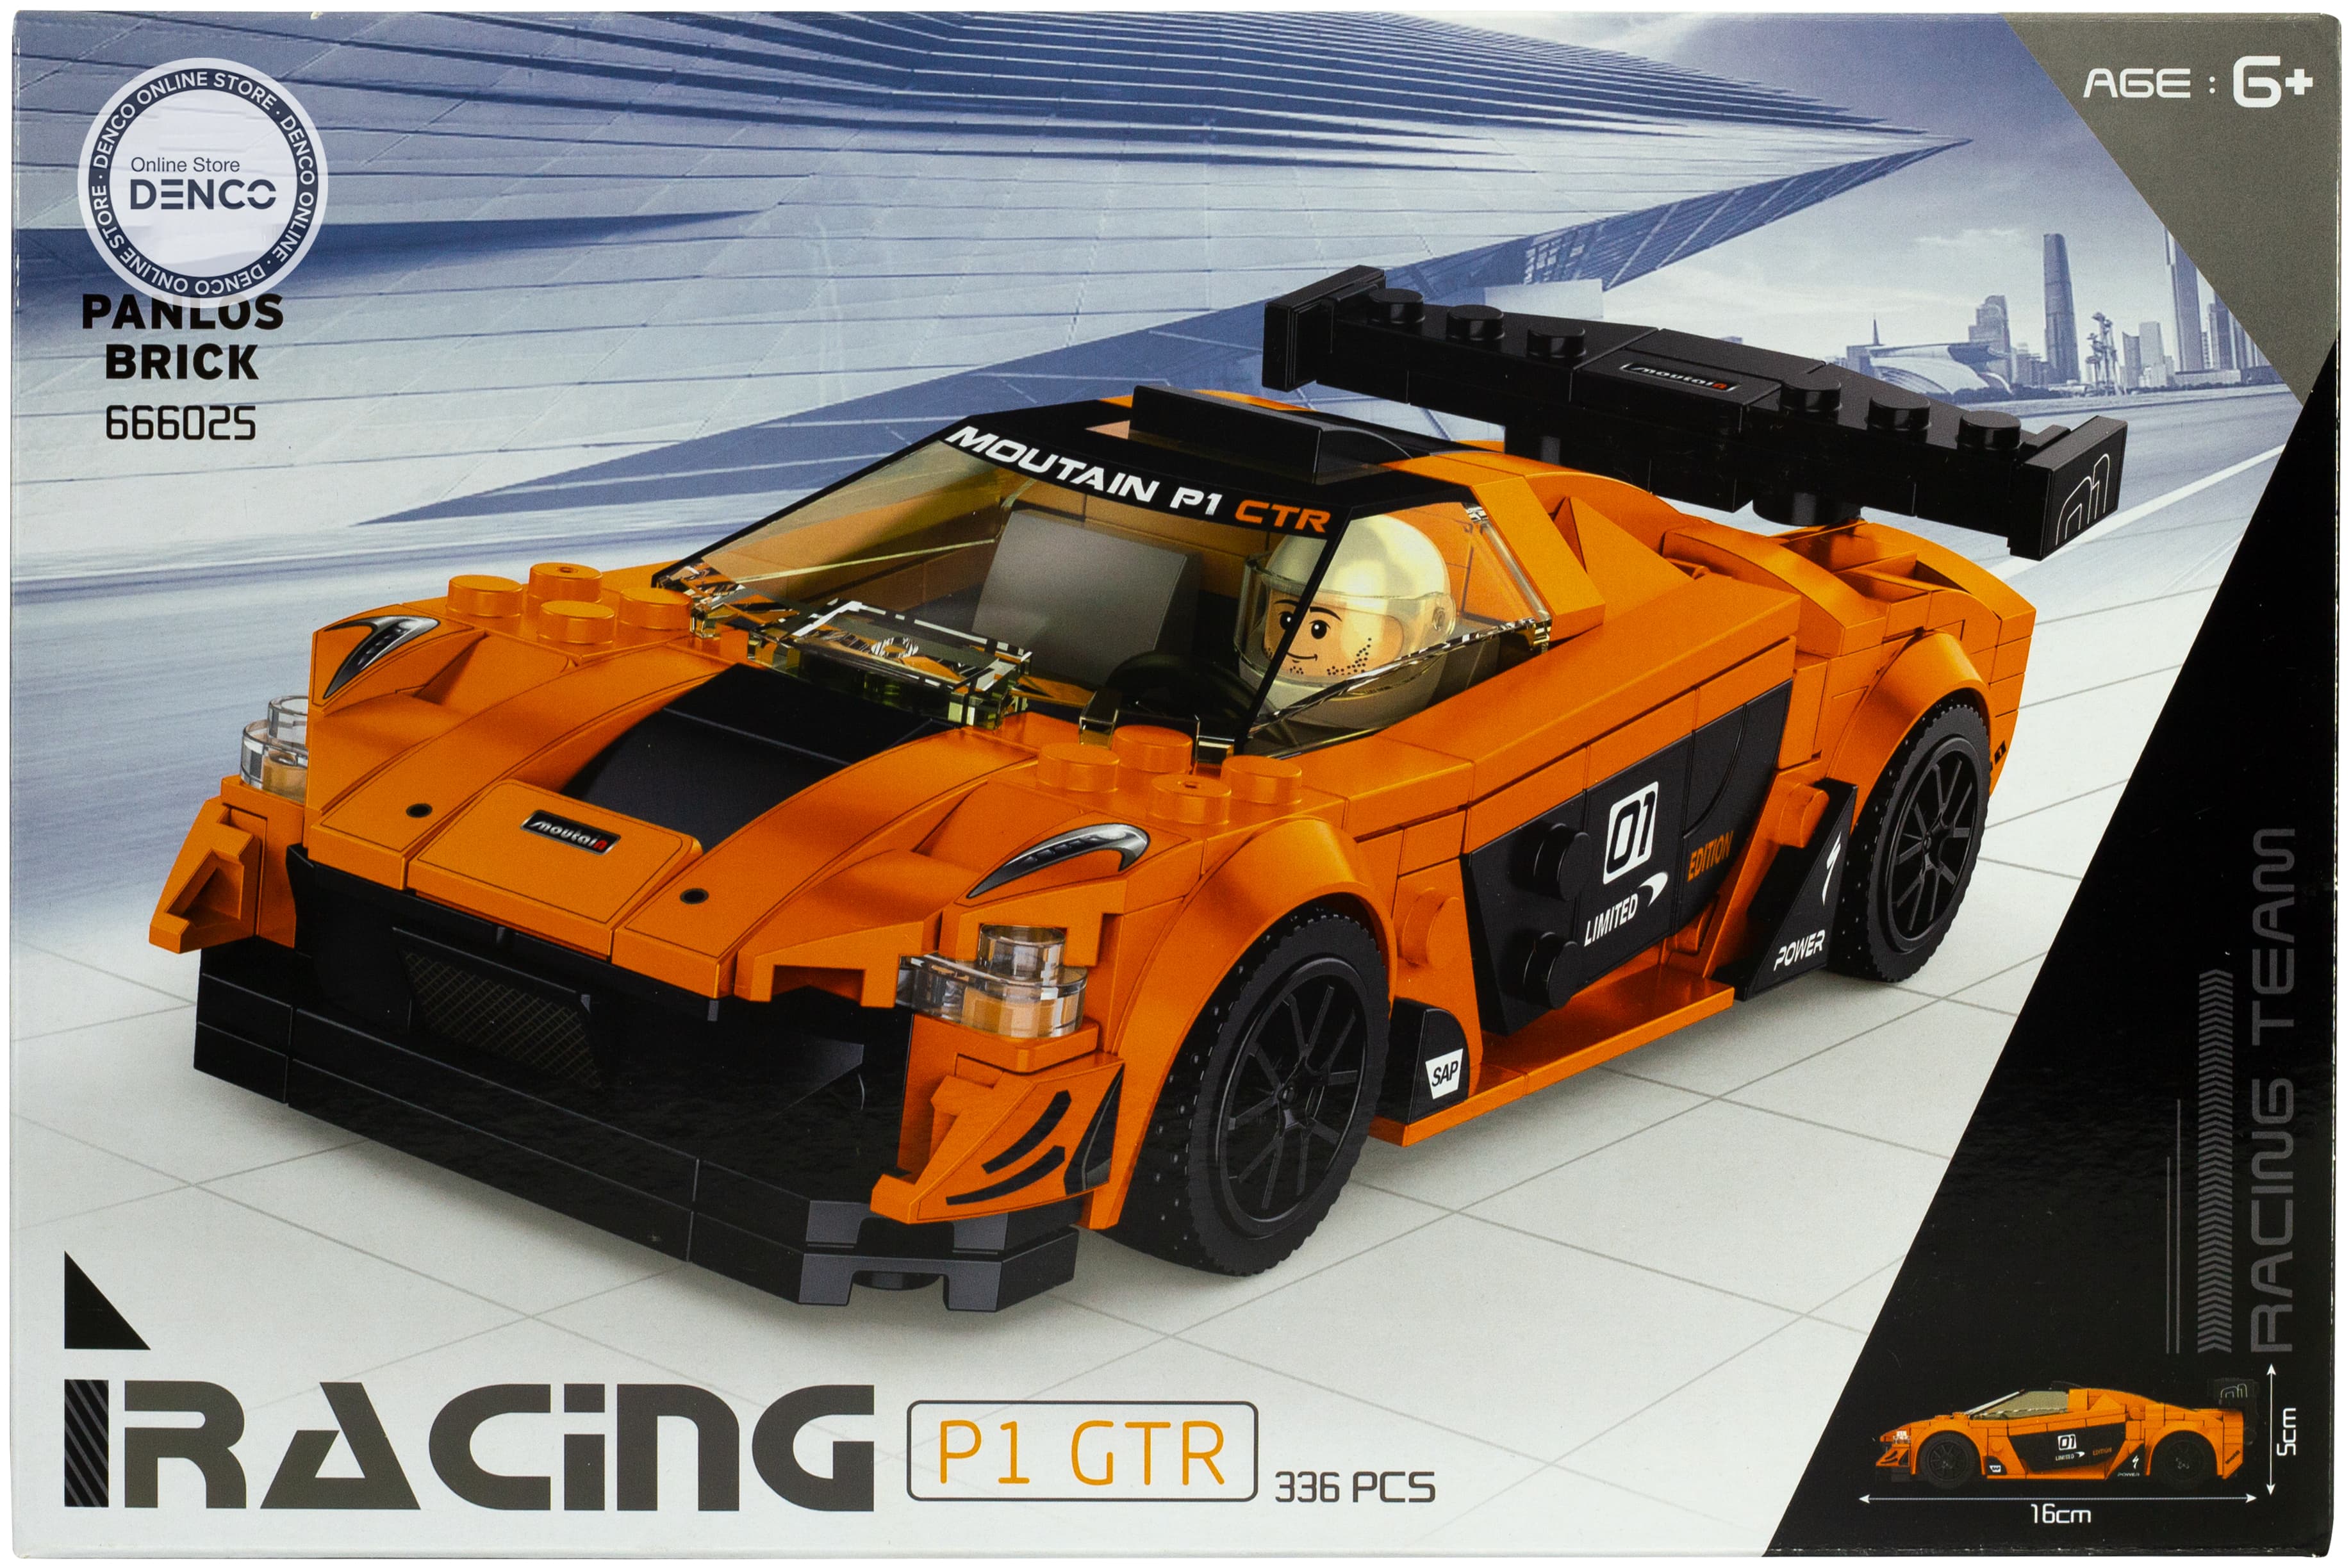 Конструктор Panlos Brick «McLaren P1 GTR» 666025 / 336 деталей